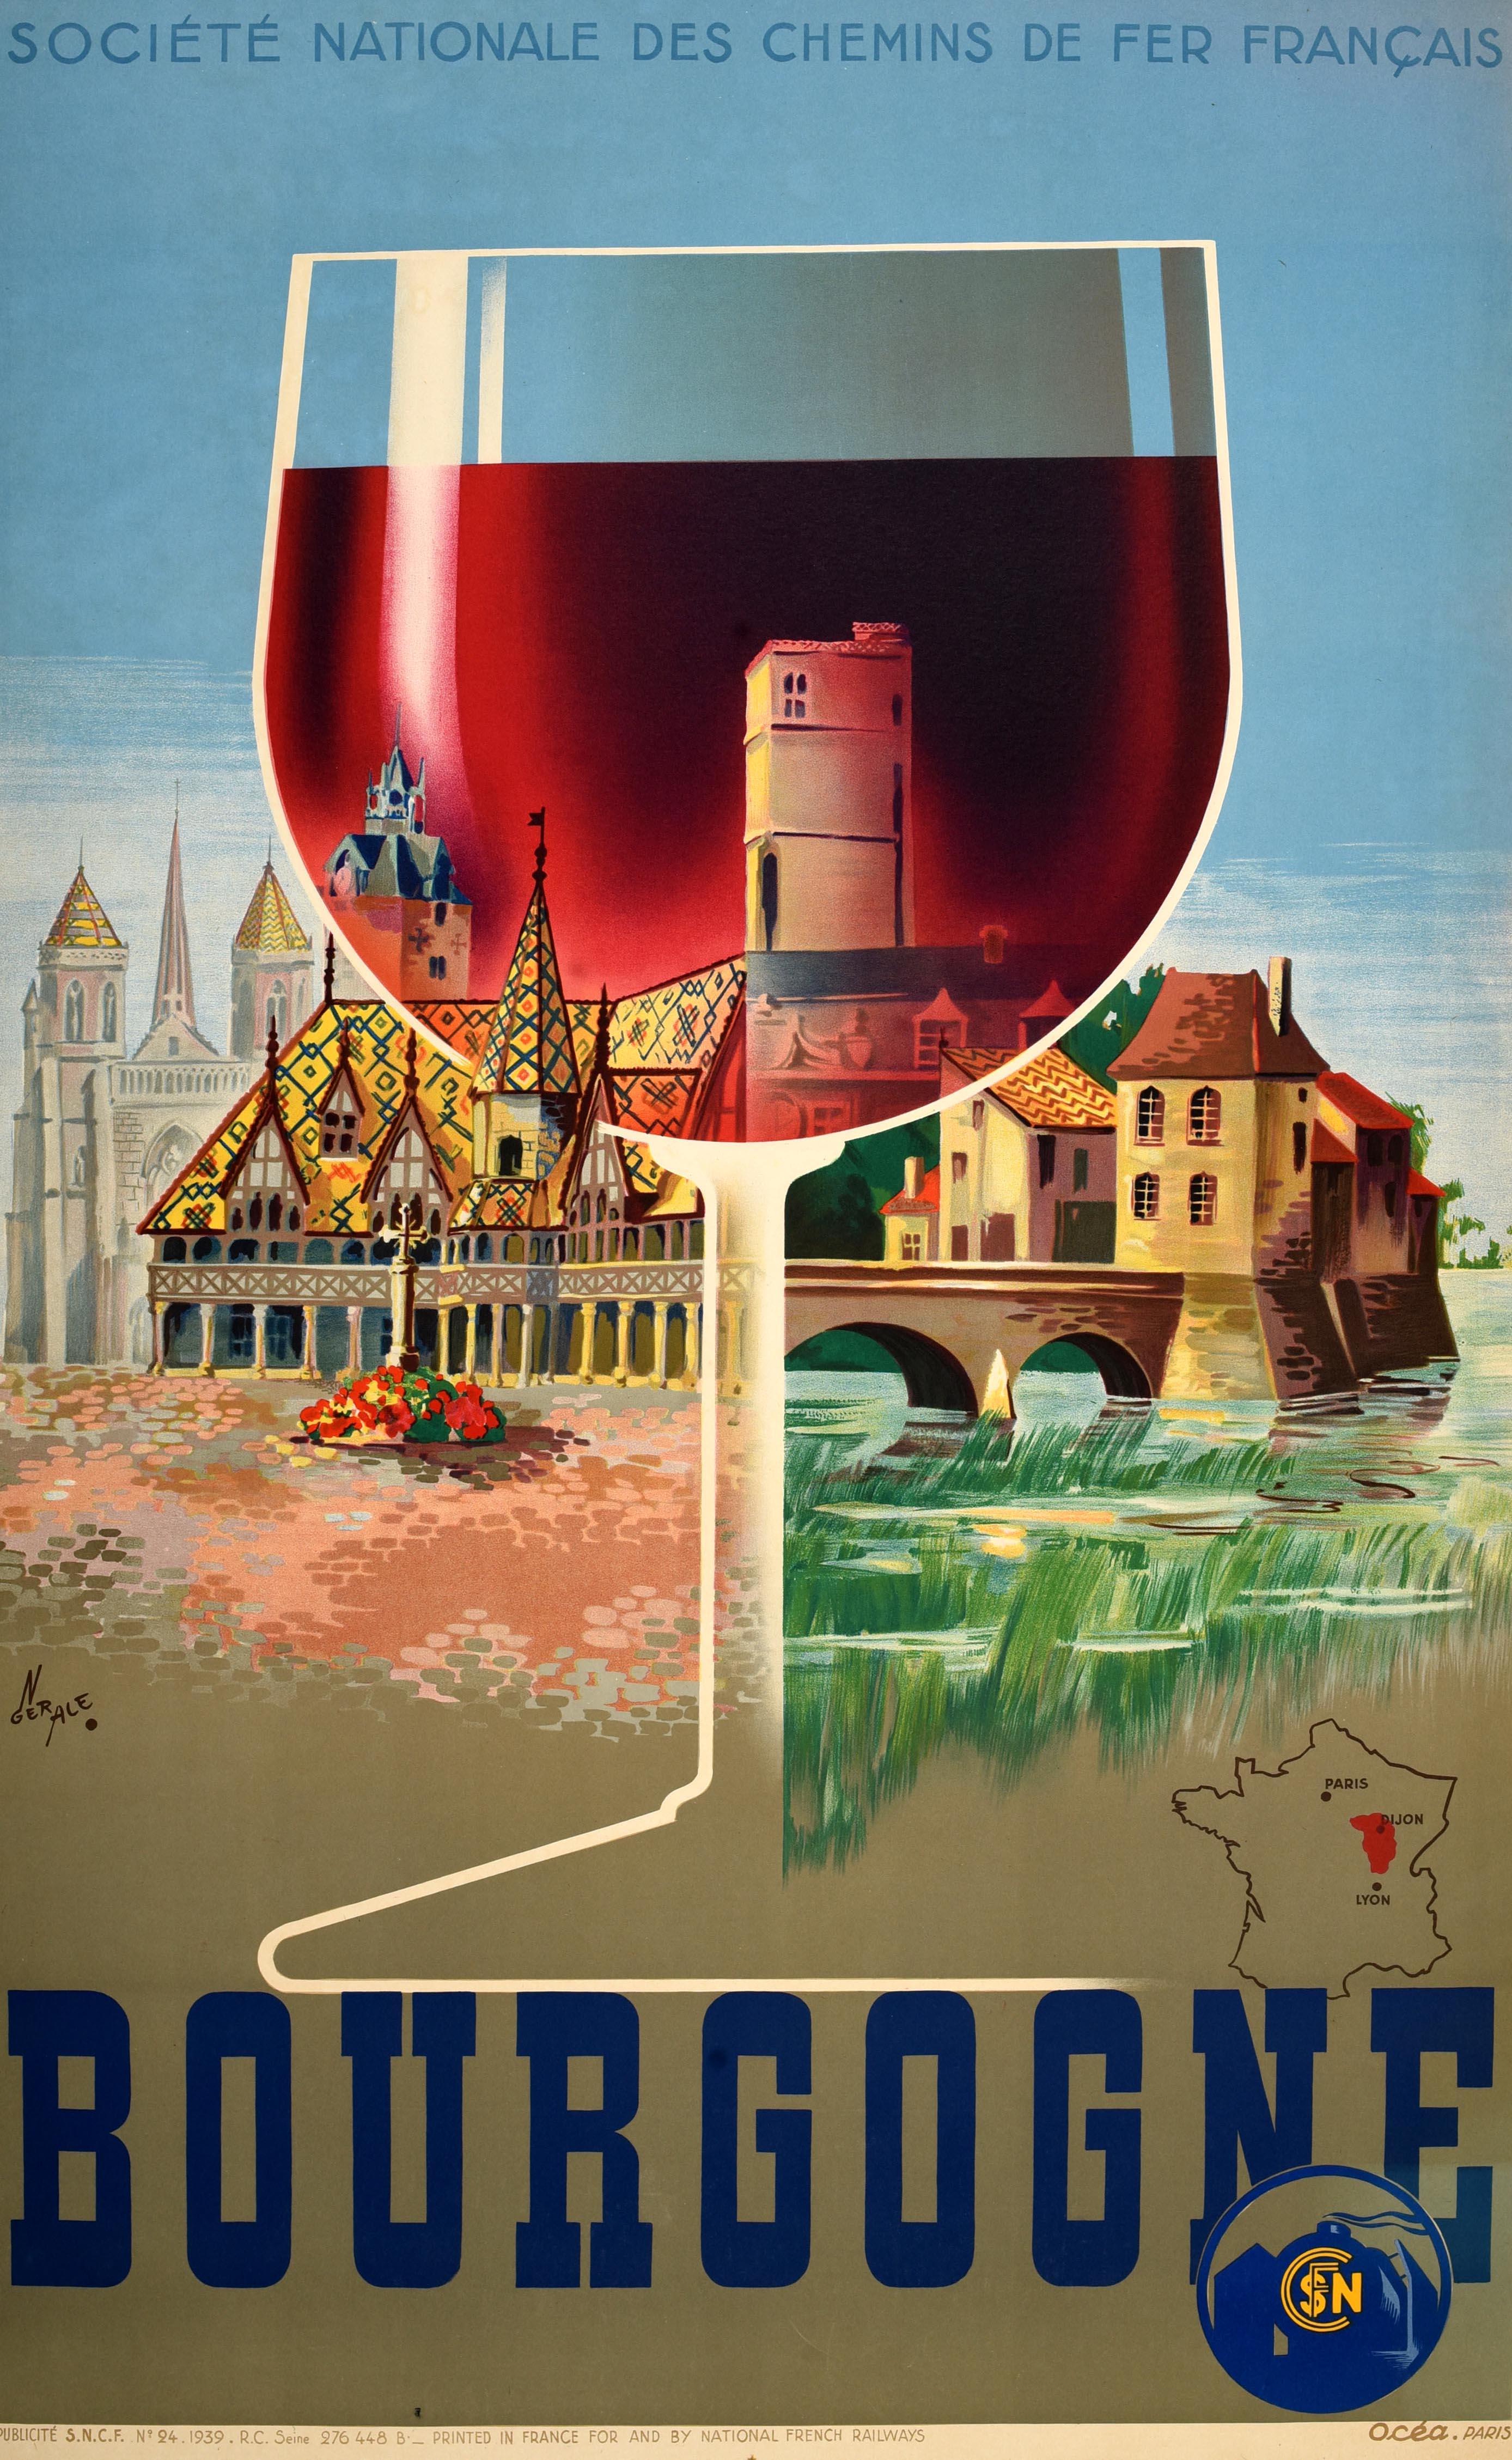 Originales Vintage-Zugreiseplakat für Burgund, herausgegeben von der SNCF Societe Nationale Des Chemins De Fer Francais. Das Plakat von Gerard Alexandre (1914-1974) zeigt ein großes Glas Rotwein vor malerischer Architektur, darunter das gotische